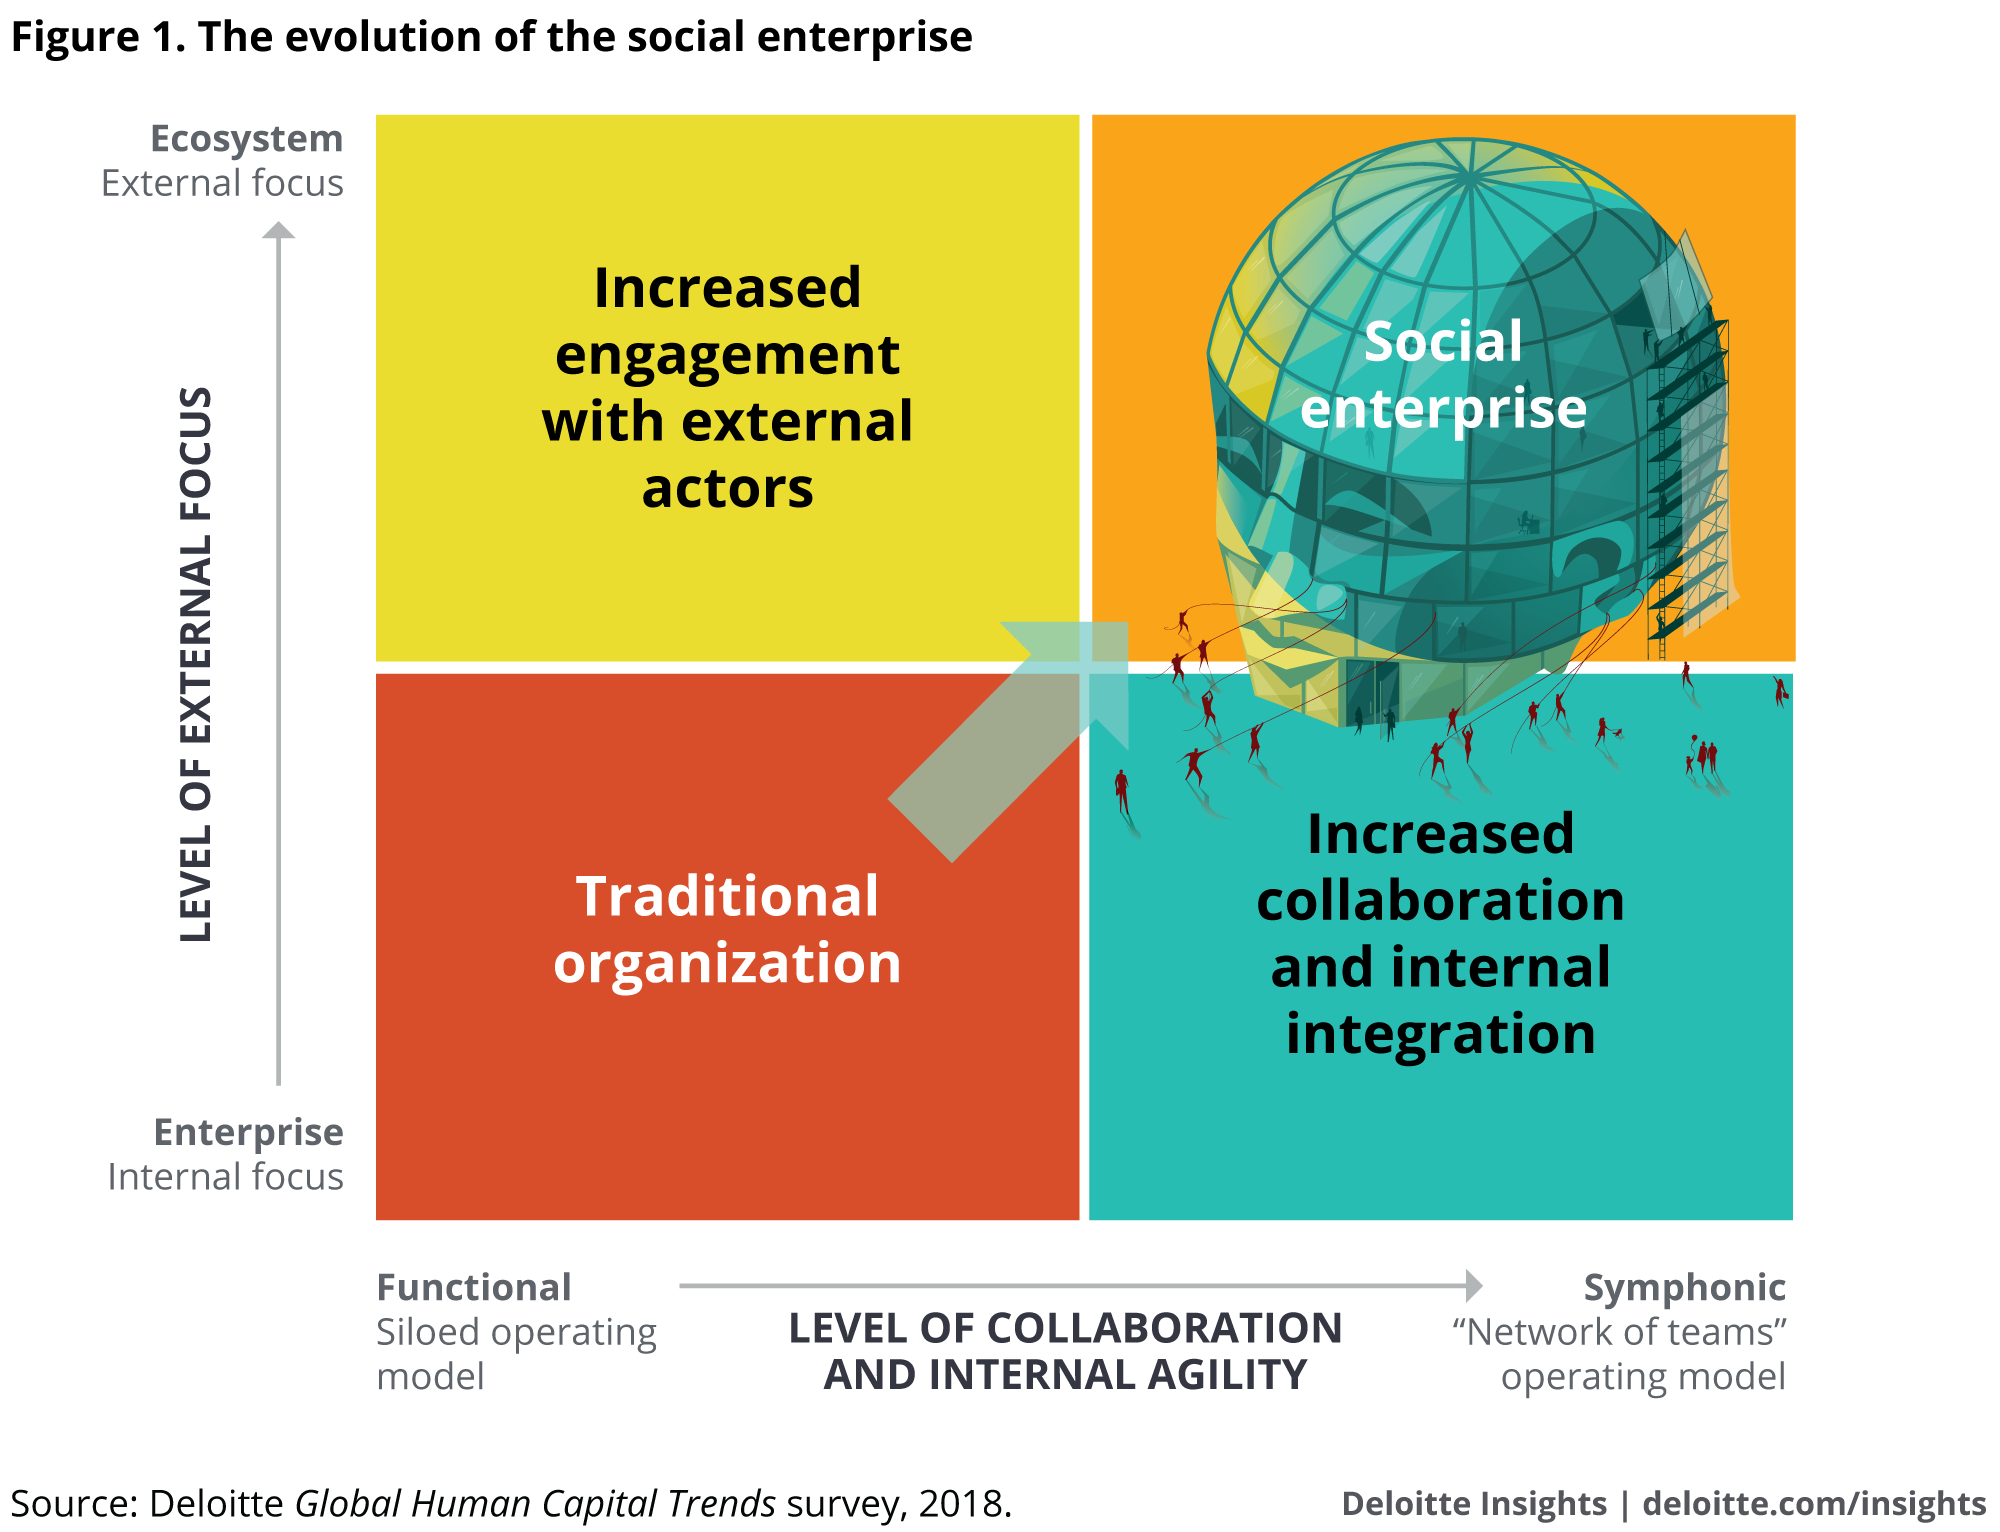 The evolution of the social enterprise